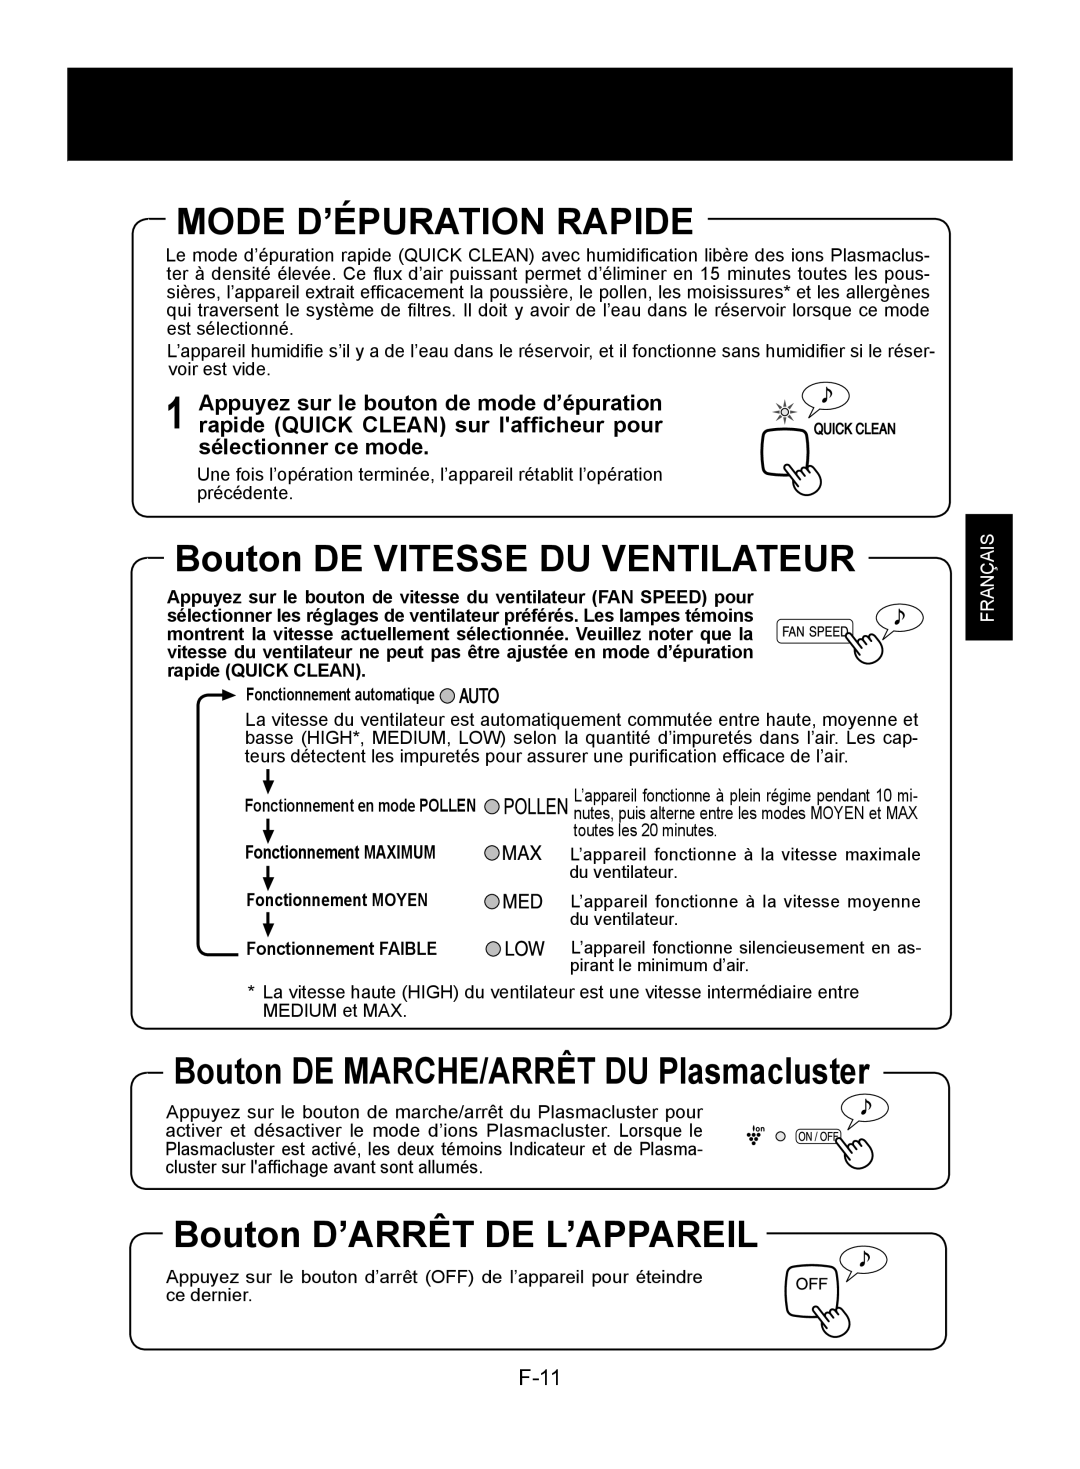 Sharp KC-850U Mode D’Épuration Rapide, Bouton DE VITESSE DU VENTILATEUR, Bouton D’ARRÊT DE L’APPAREIL, F-, Français 